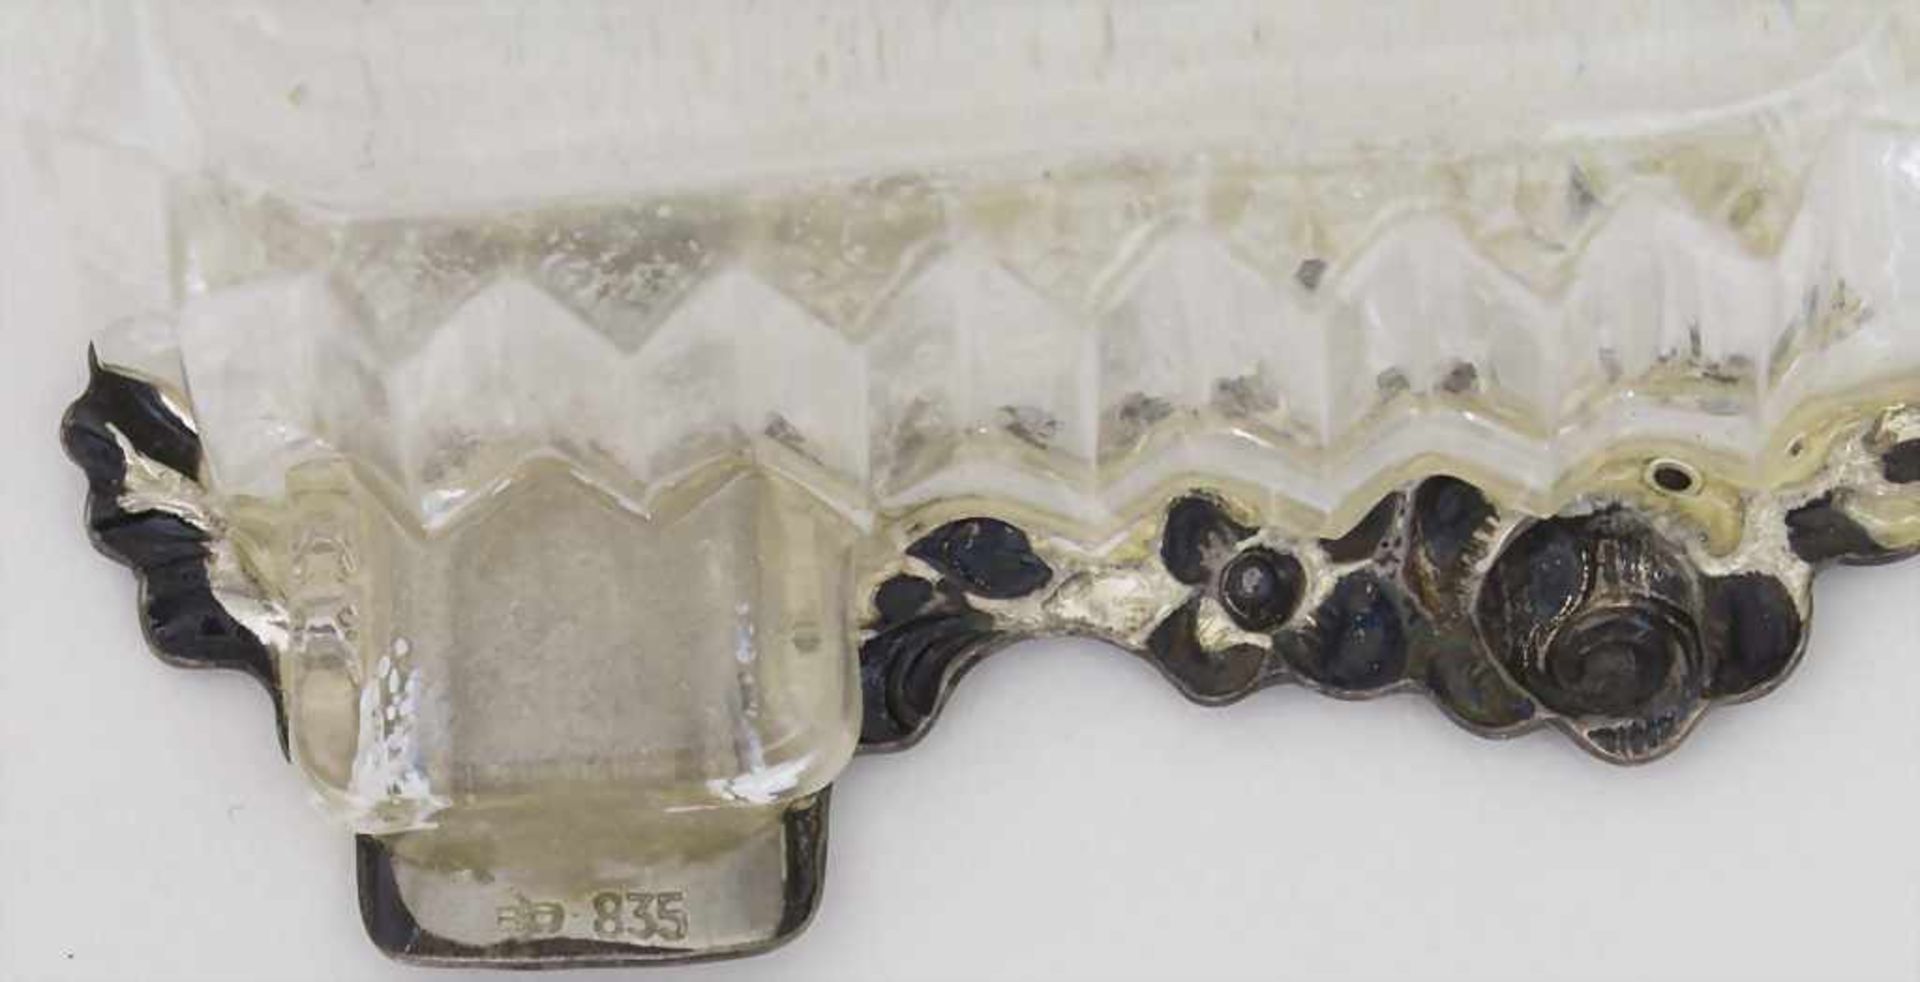 2 figürliche Anhänger für Beißringe / 2 pendants for teething ring, WMF Geislingen, 20. Jh. - Bild 2 aus 2